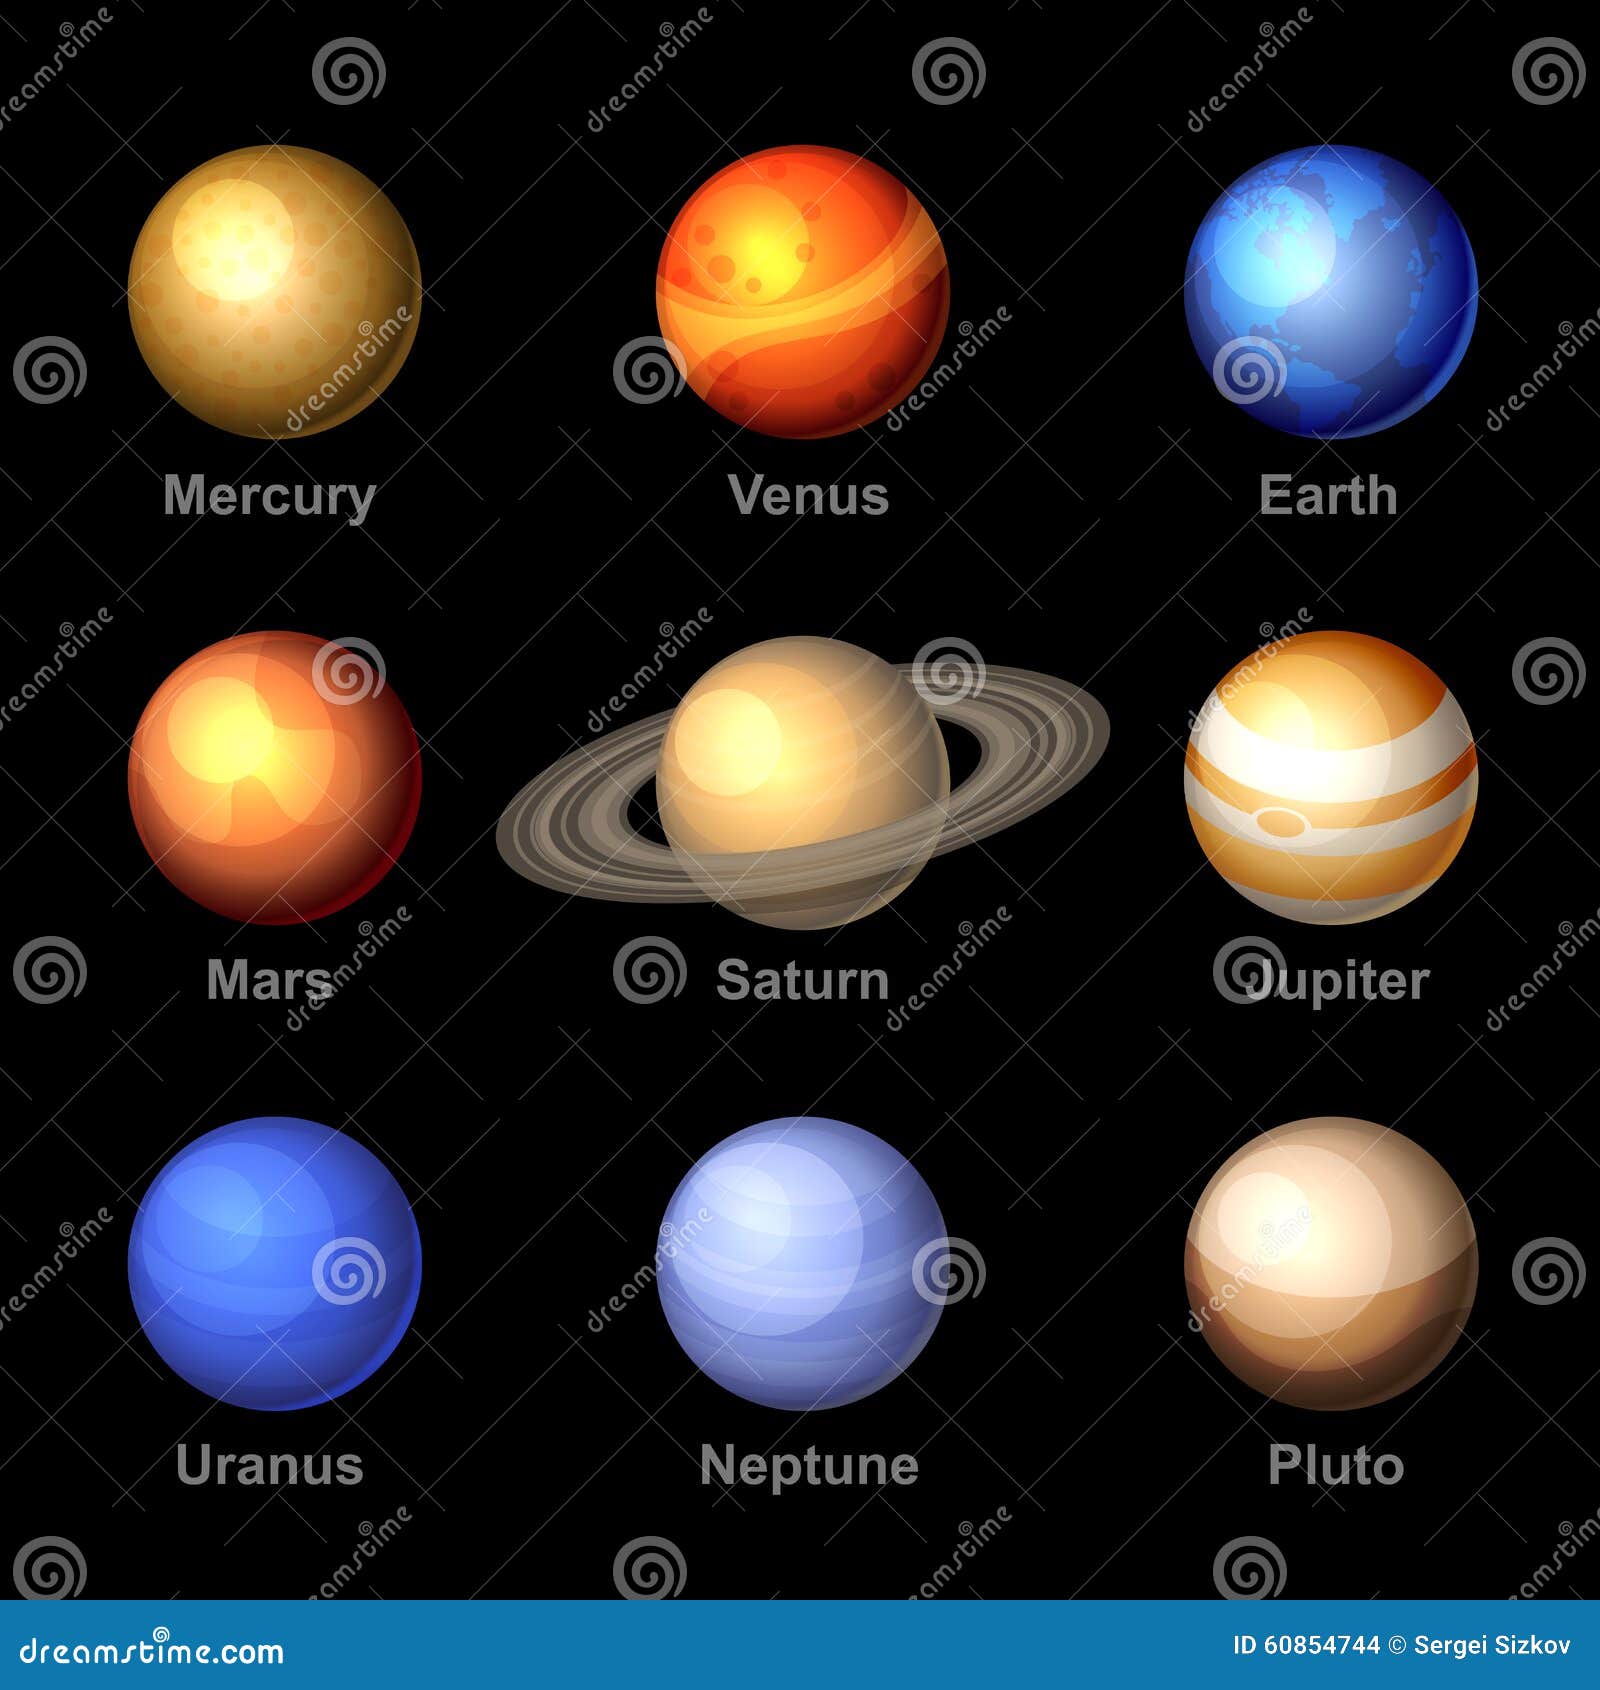 couleur des planetes du systeme solaire